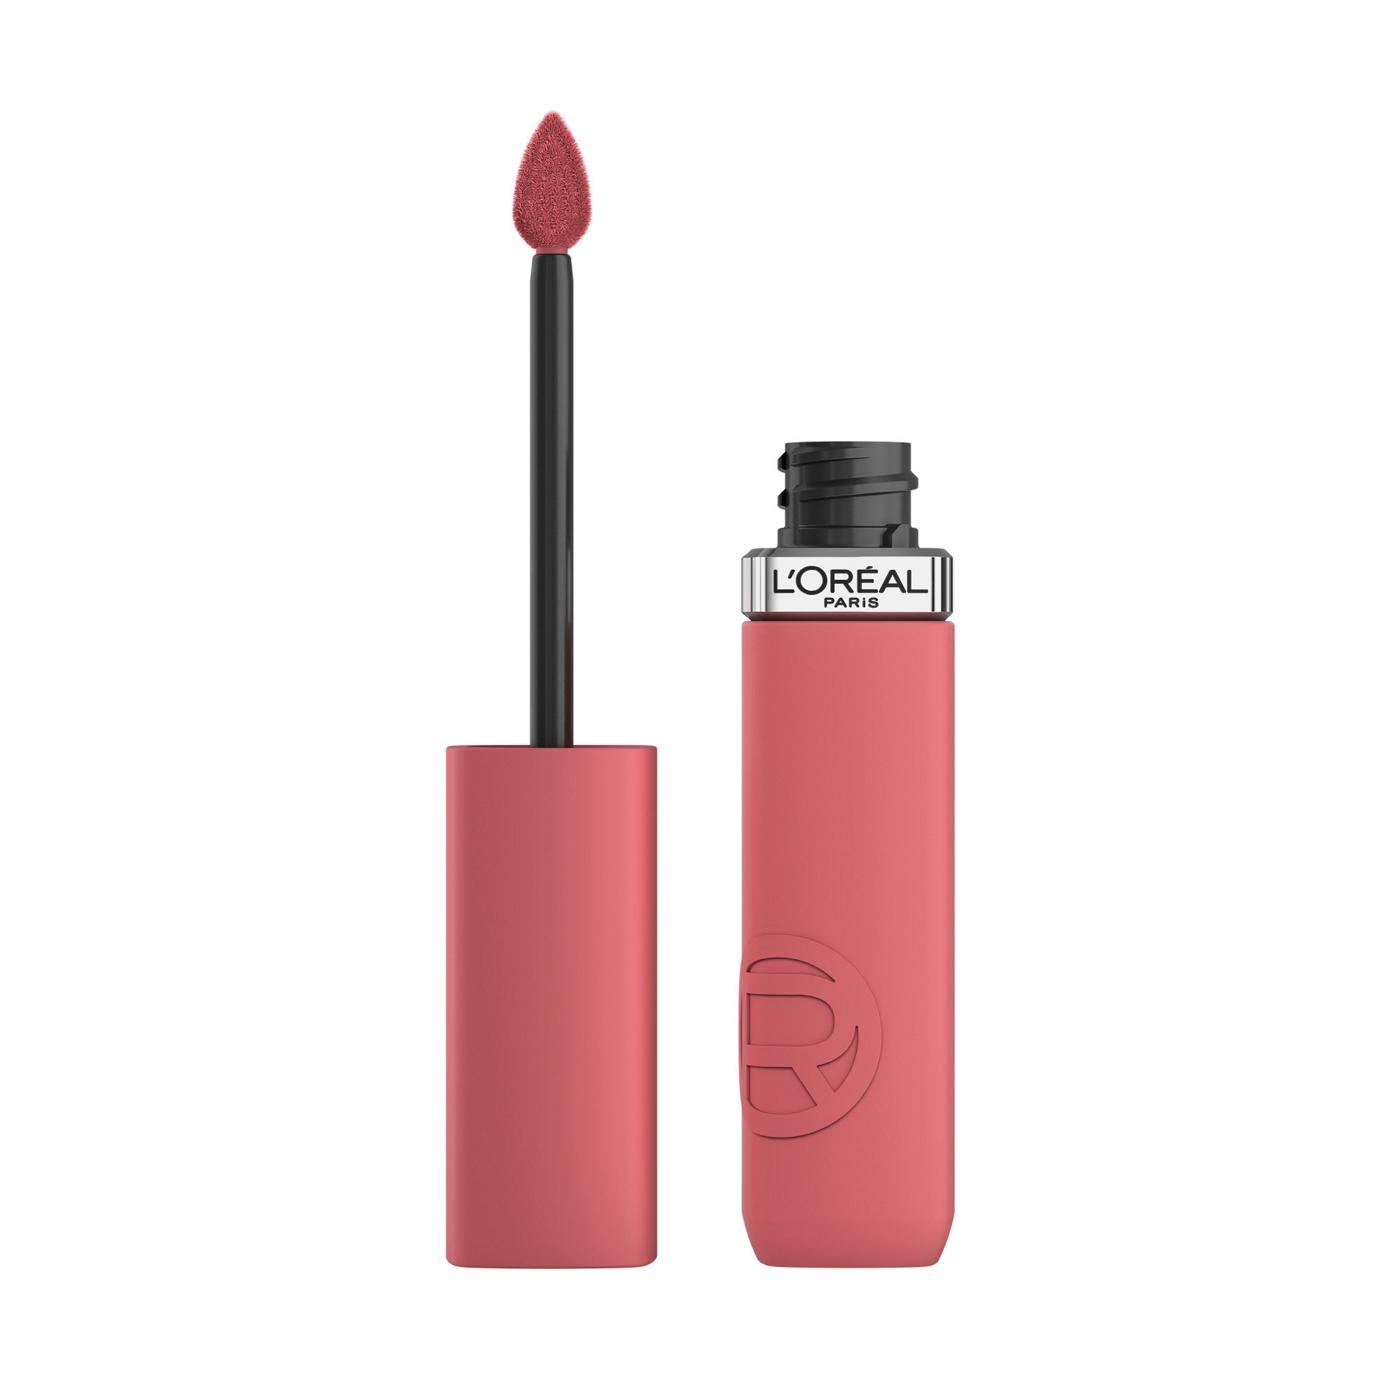 L'Oréal Paris Infallible Le Matte Resistance Liquid Lipstick - Major Crush; image 1 of 6